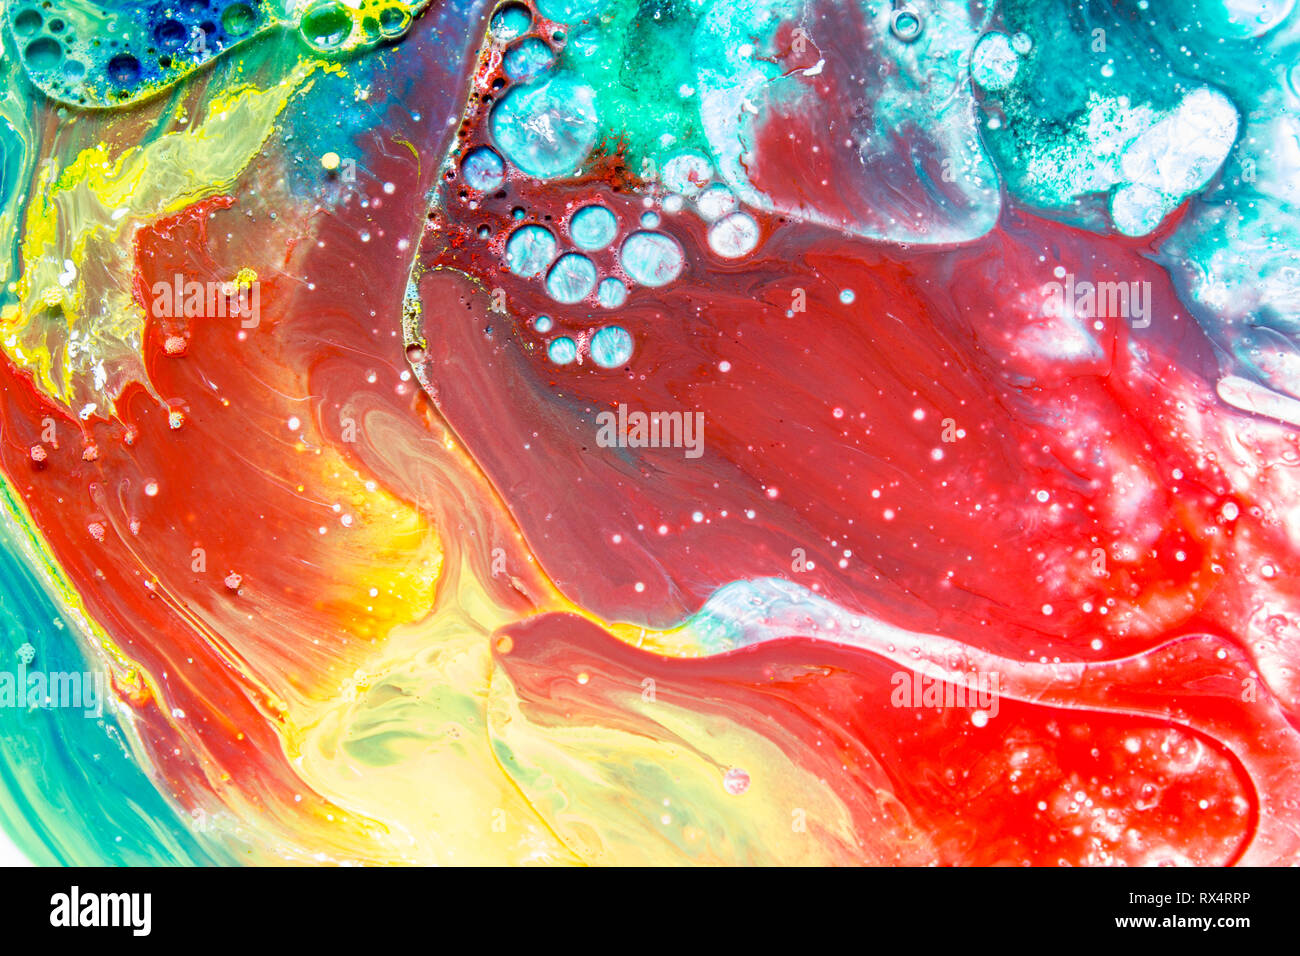 Bulle colorée des peintures acryliques, la peinture colorée, gouttes abstract colorful background Banque D'Images